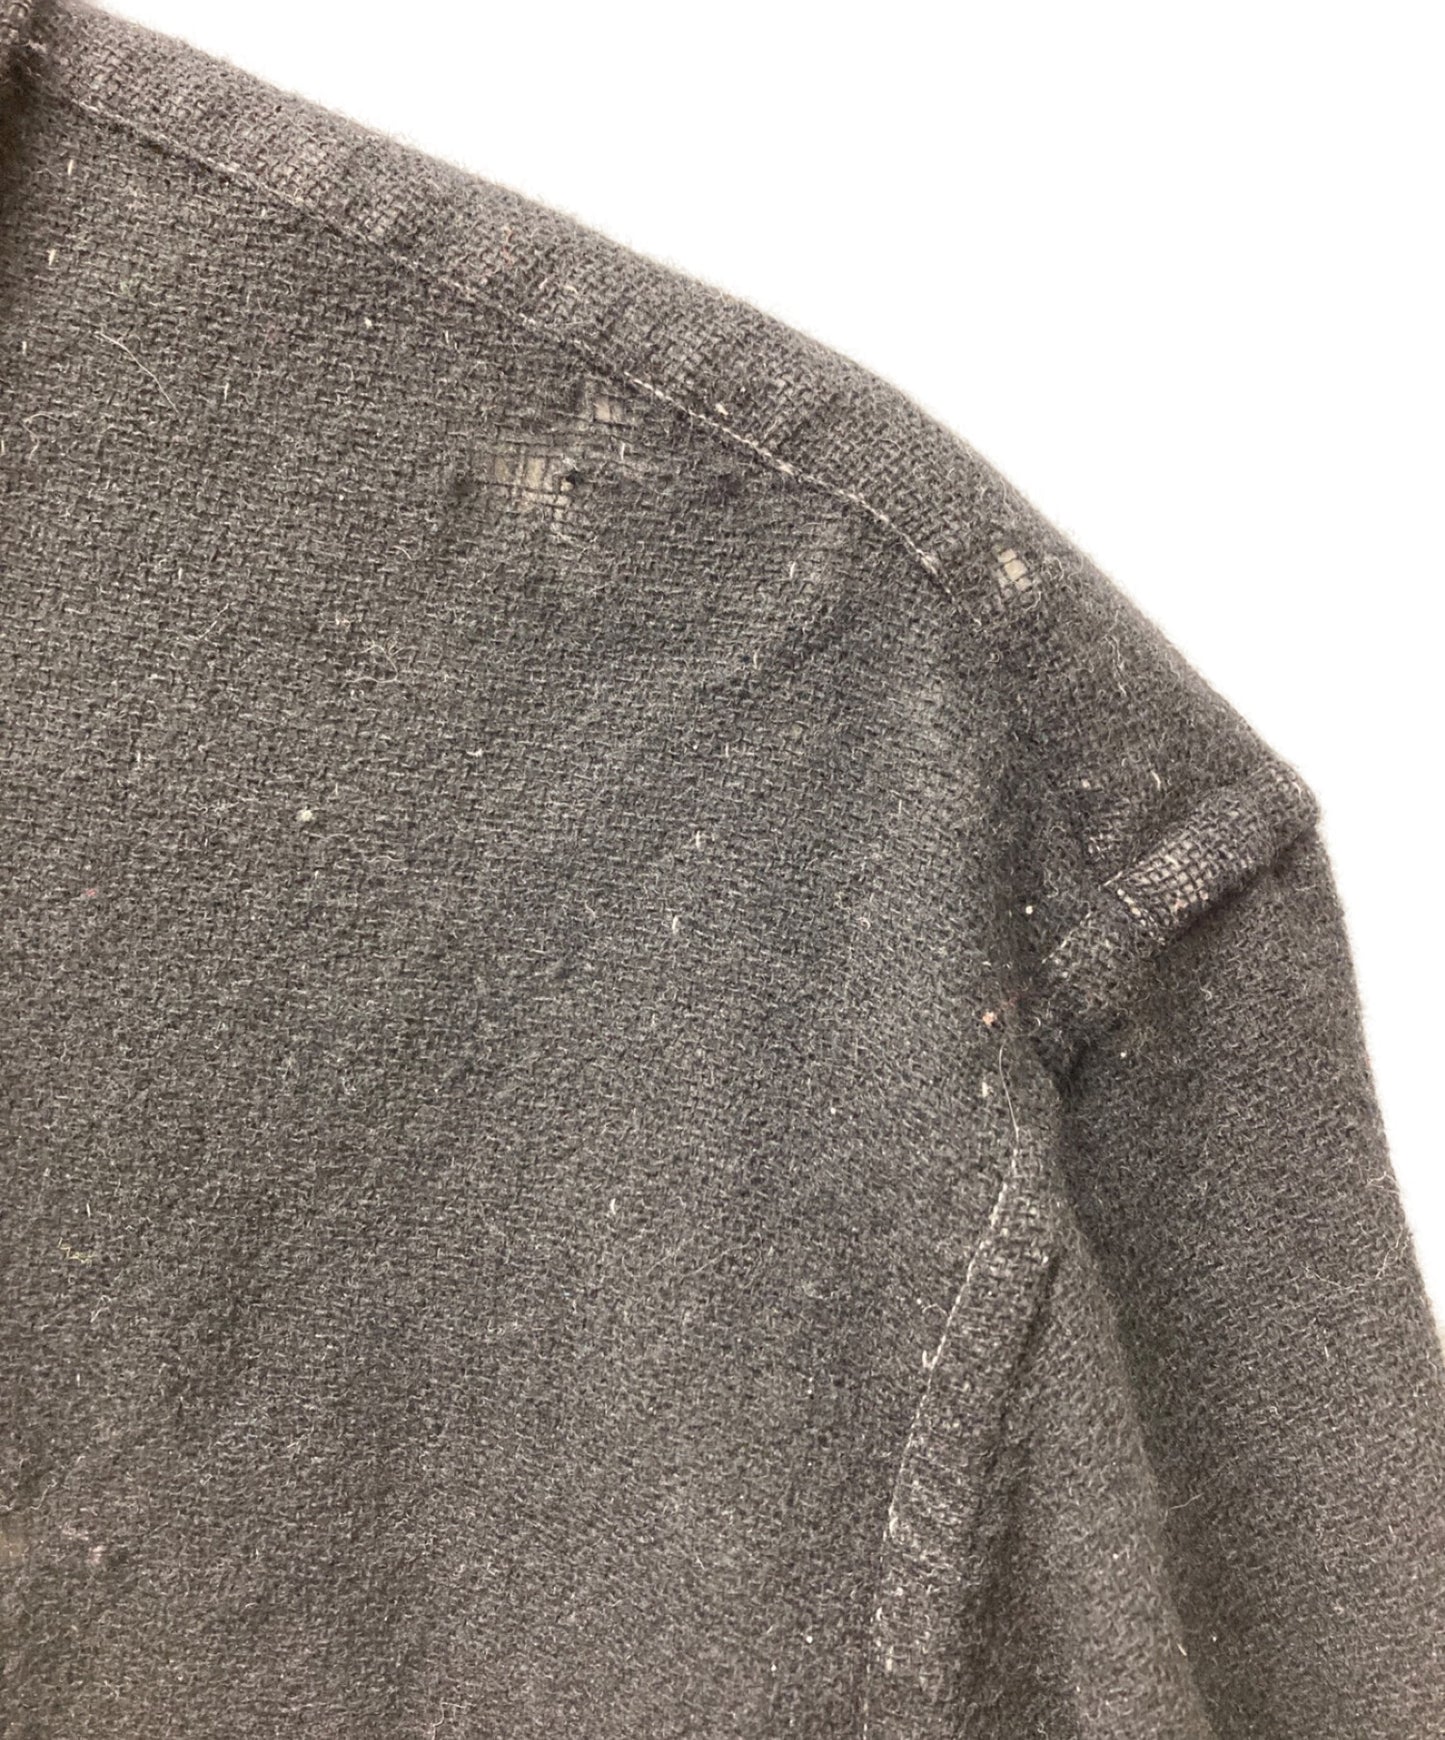 Comme des Garcons Homme 90年代棉羊毛损坏的衬衫HB-070010